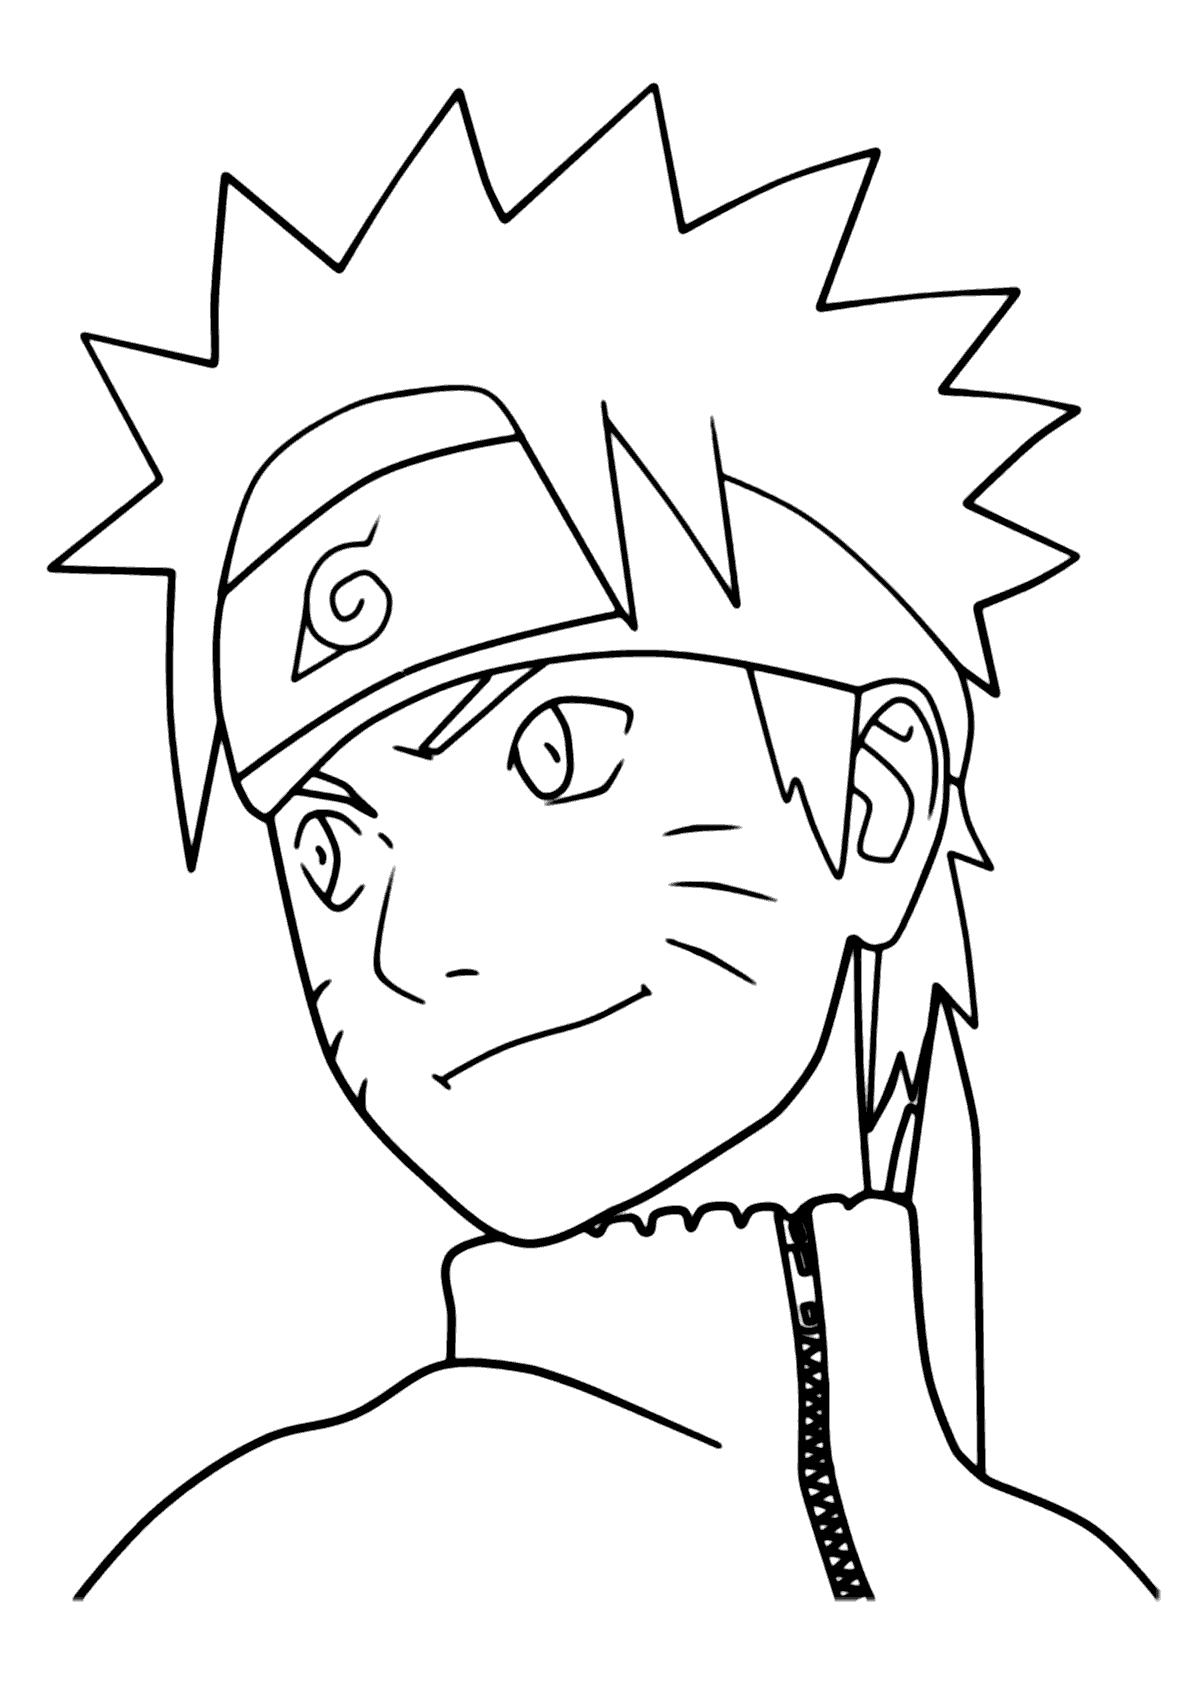 Desenhos para colorir de Naruto